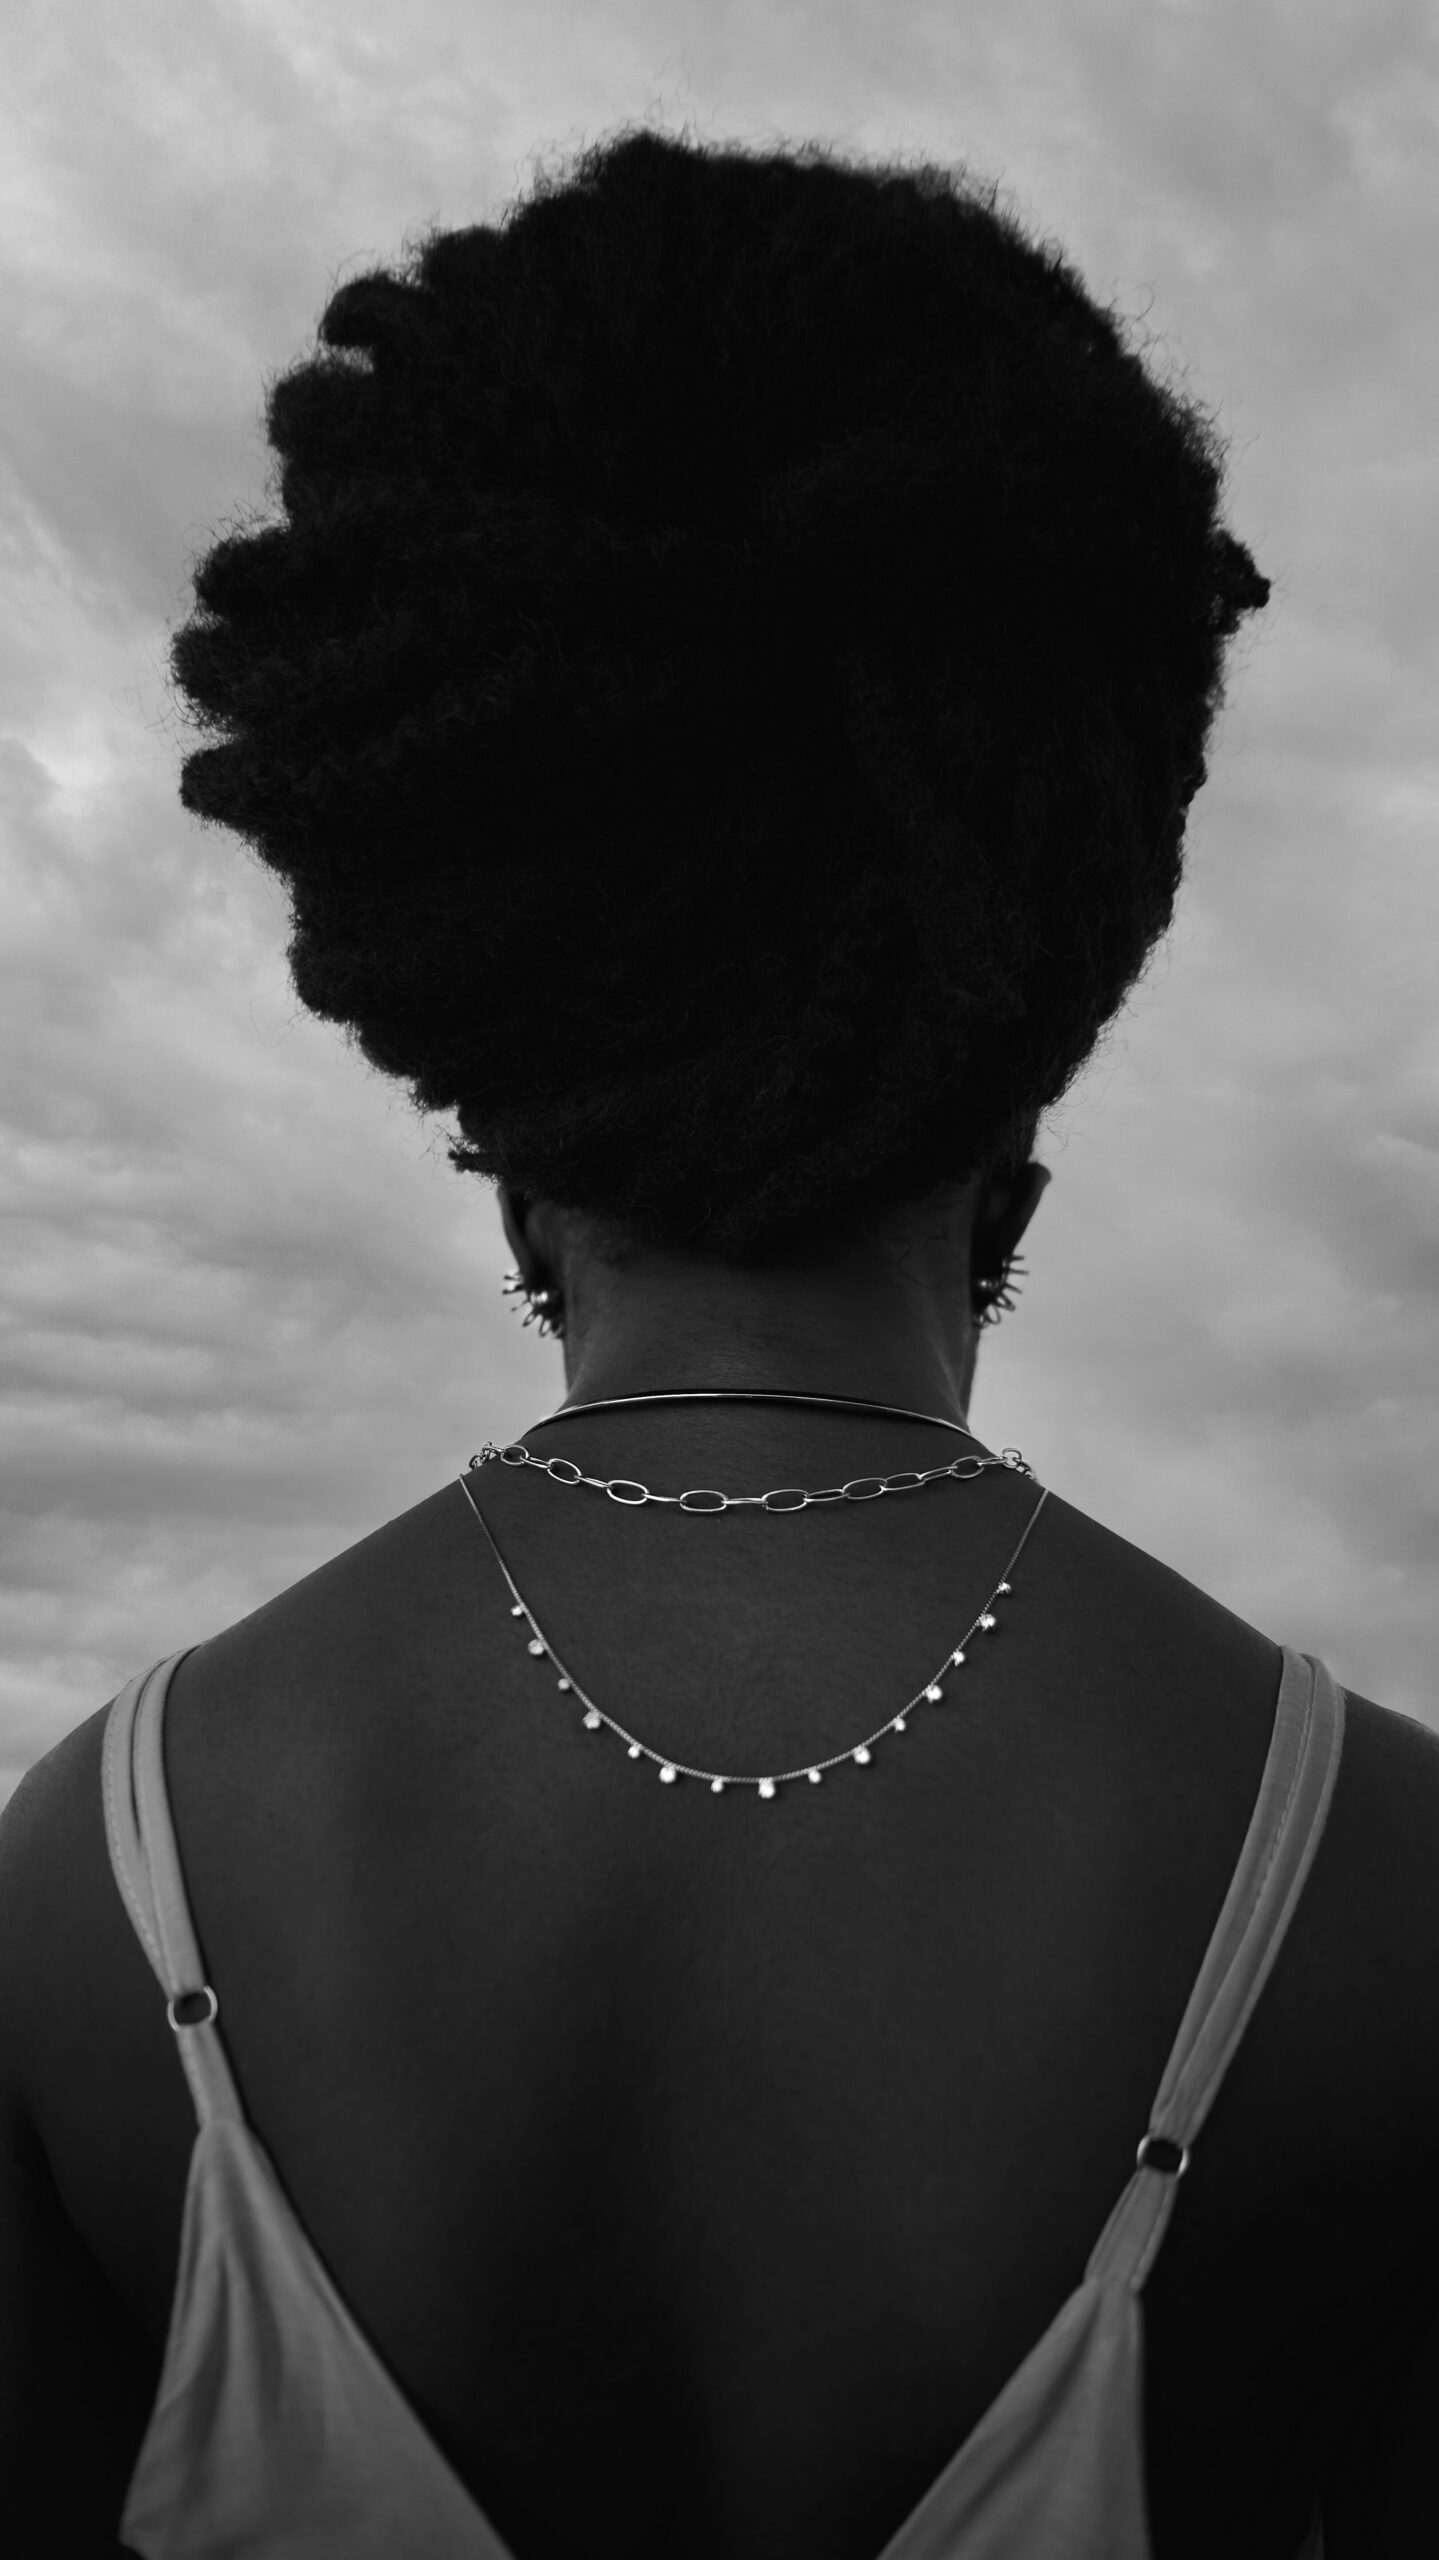 Modelo negra de costas fotograda pelo profissional, os colares se destacam na fotografia preto e branco.